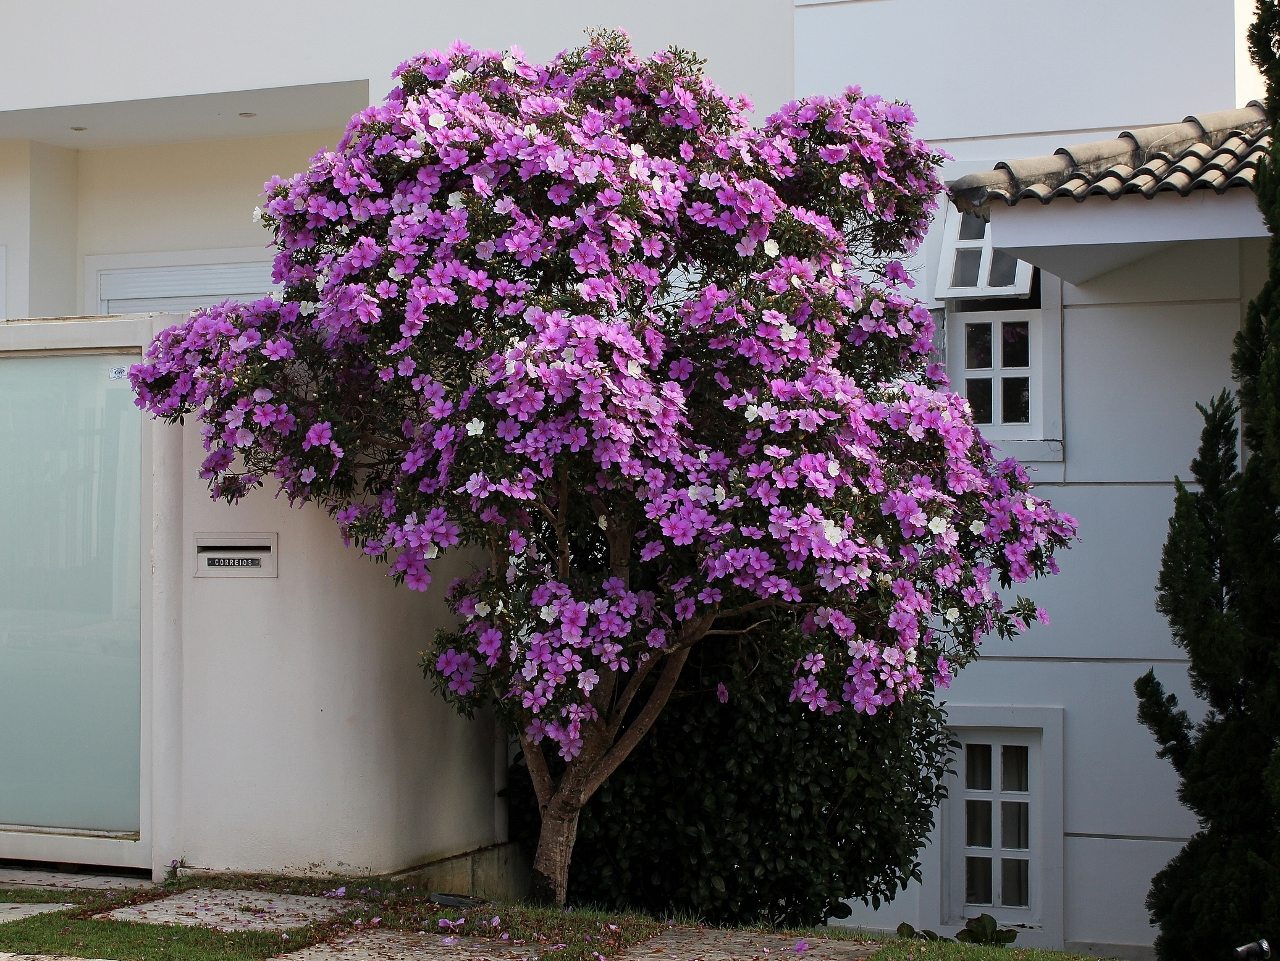 Com flores que lembram violetas, o manacá da serra é adequado tanto para jardins quanto para calçadas (Foto: Mauricio Mercadante)